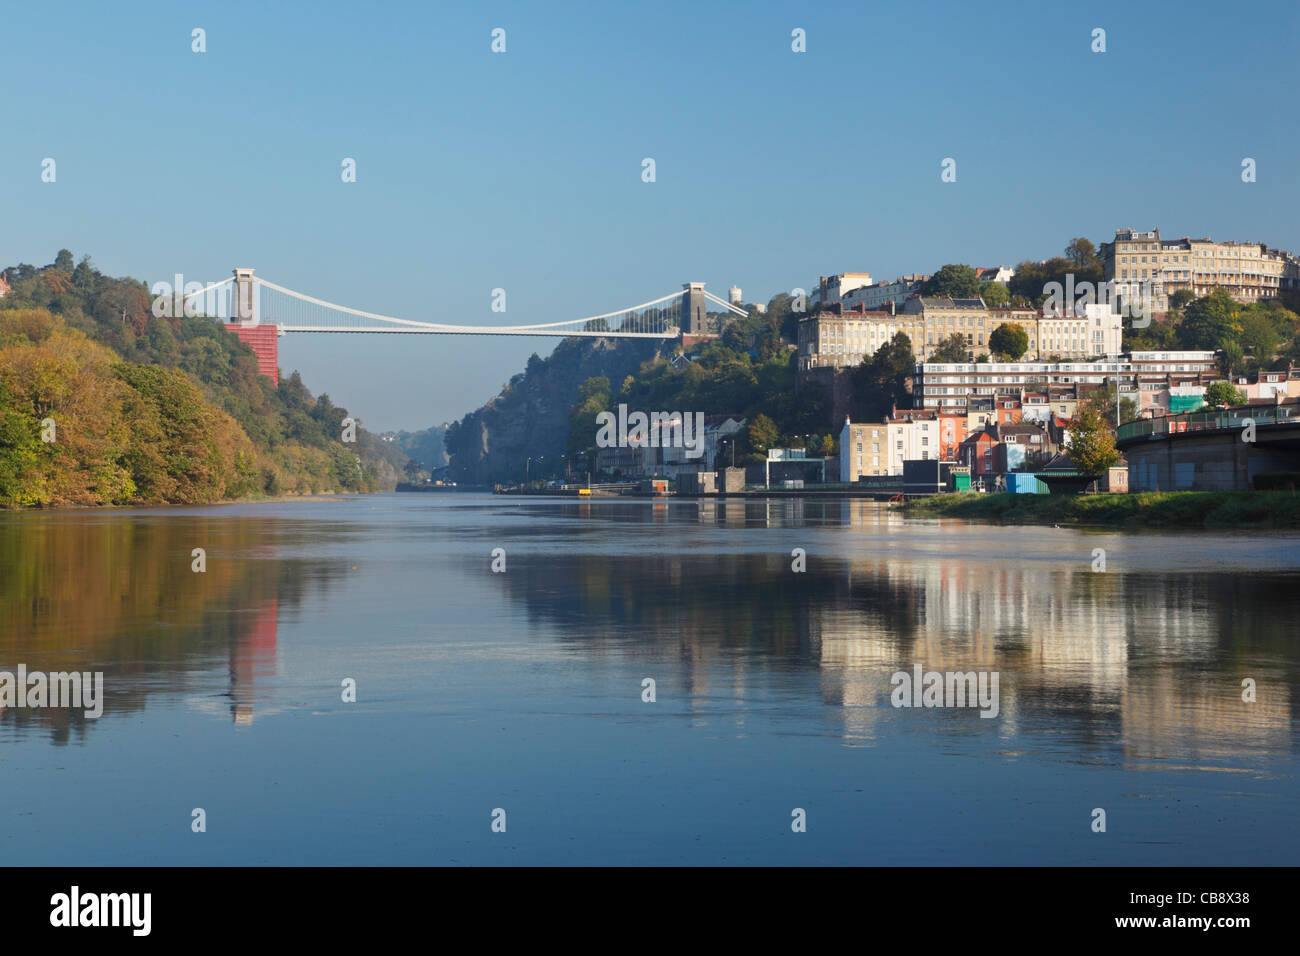 La rivière Avon et le pont suspendu de Clifton en haute marée de vive-eau. Bristol. L'Angleterre. UK. Banque D'Images